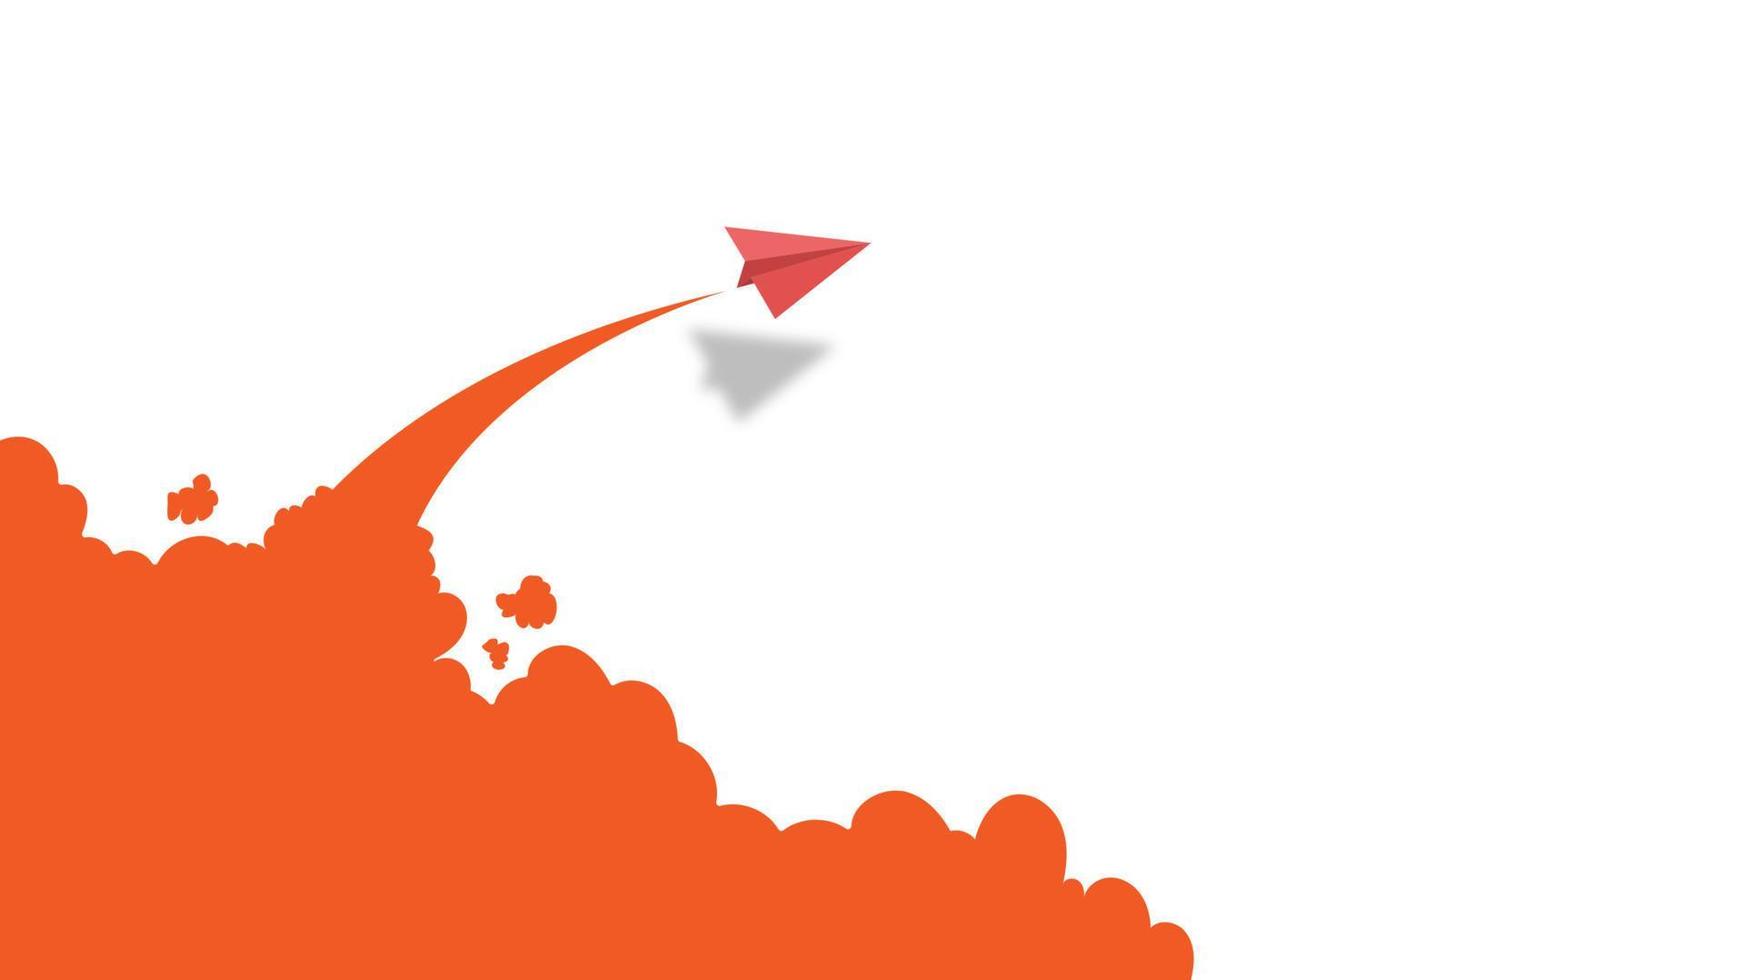 weißer und roter papierflugzeugführer, der zusammen auf blauem himmel auf wolkenhintergrund fliegt. kreative konzeptidee des geschäftserfolgs und der führung im papierhandwerkskunststildesign .vektorillustration vektor